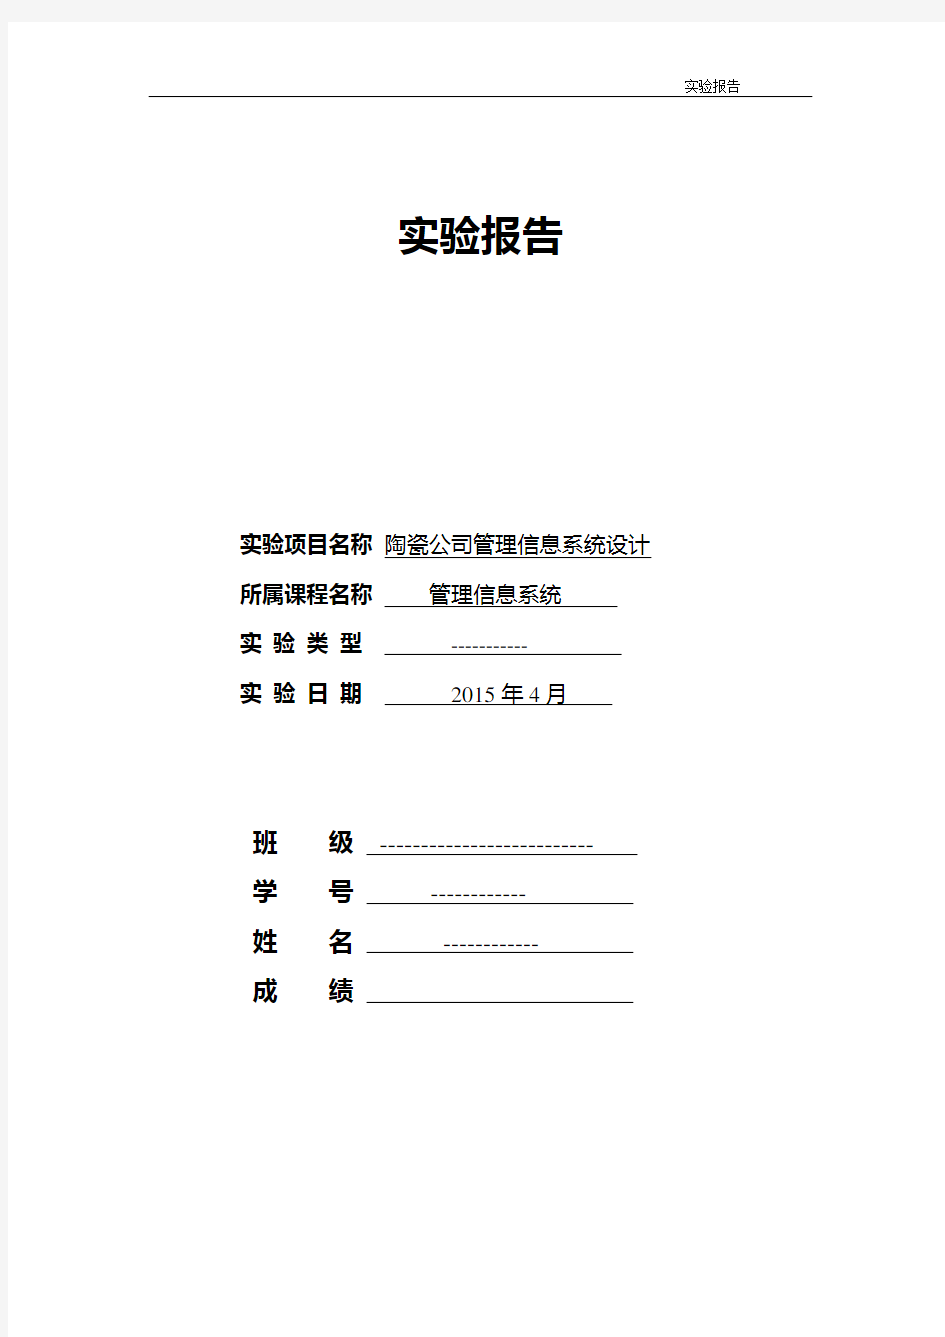 陶瓷公司信息系统实验报告书2015年4月